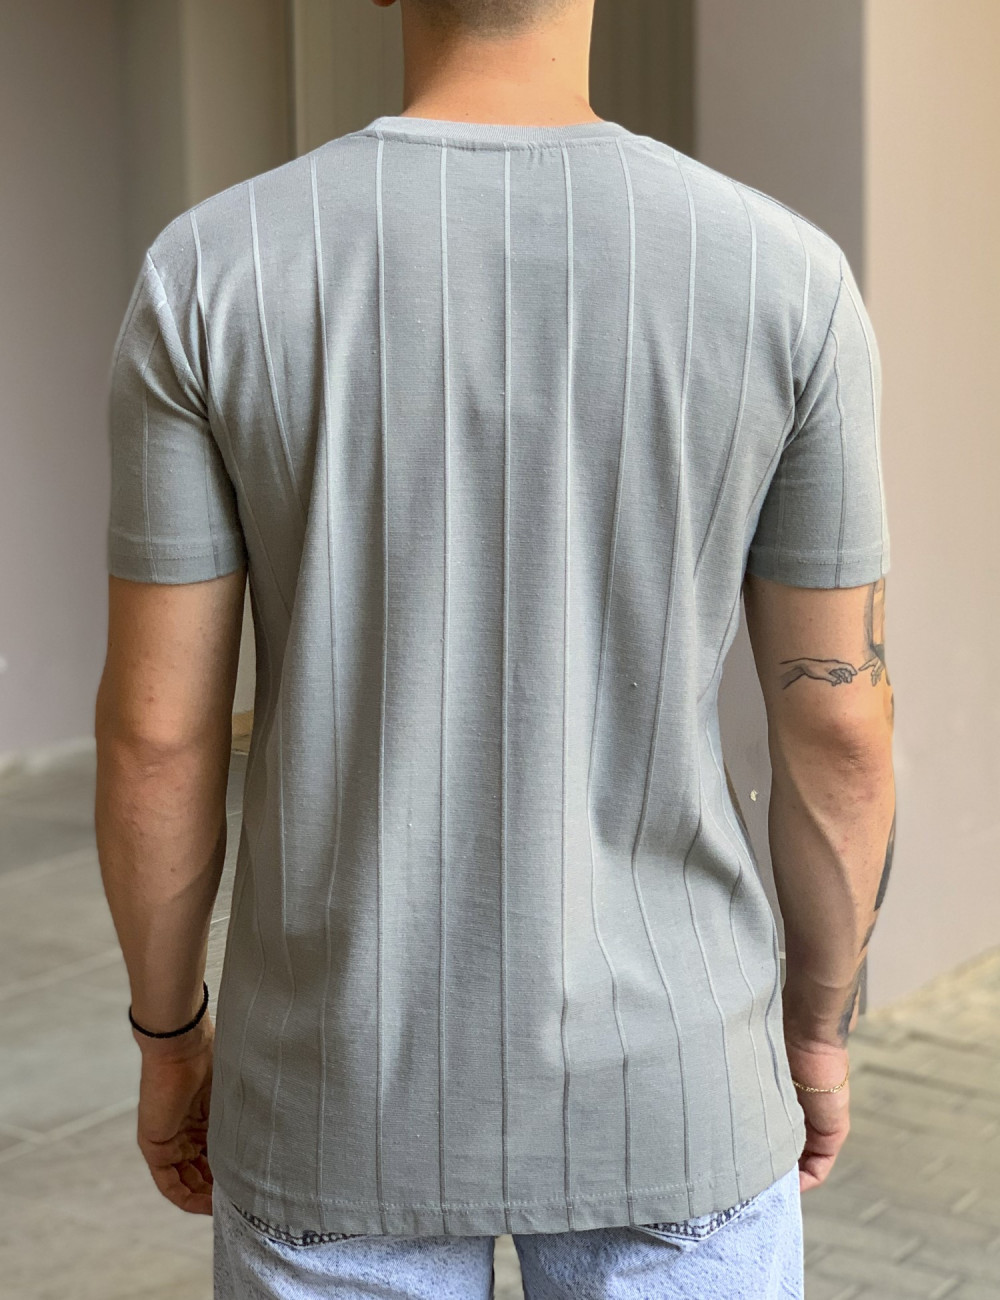 Ανδρική γκρι μονόχρωμη κοντομάνικη μπλούζα με ανάγλυφο ύφασμα TST1408G